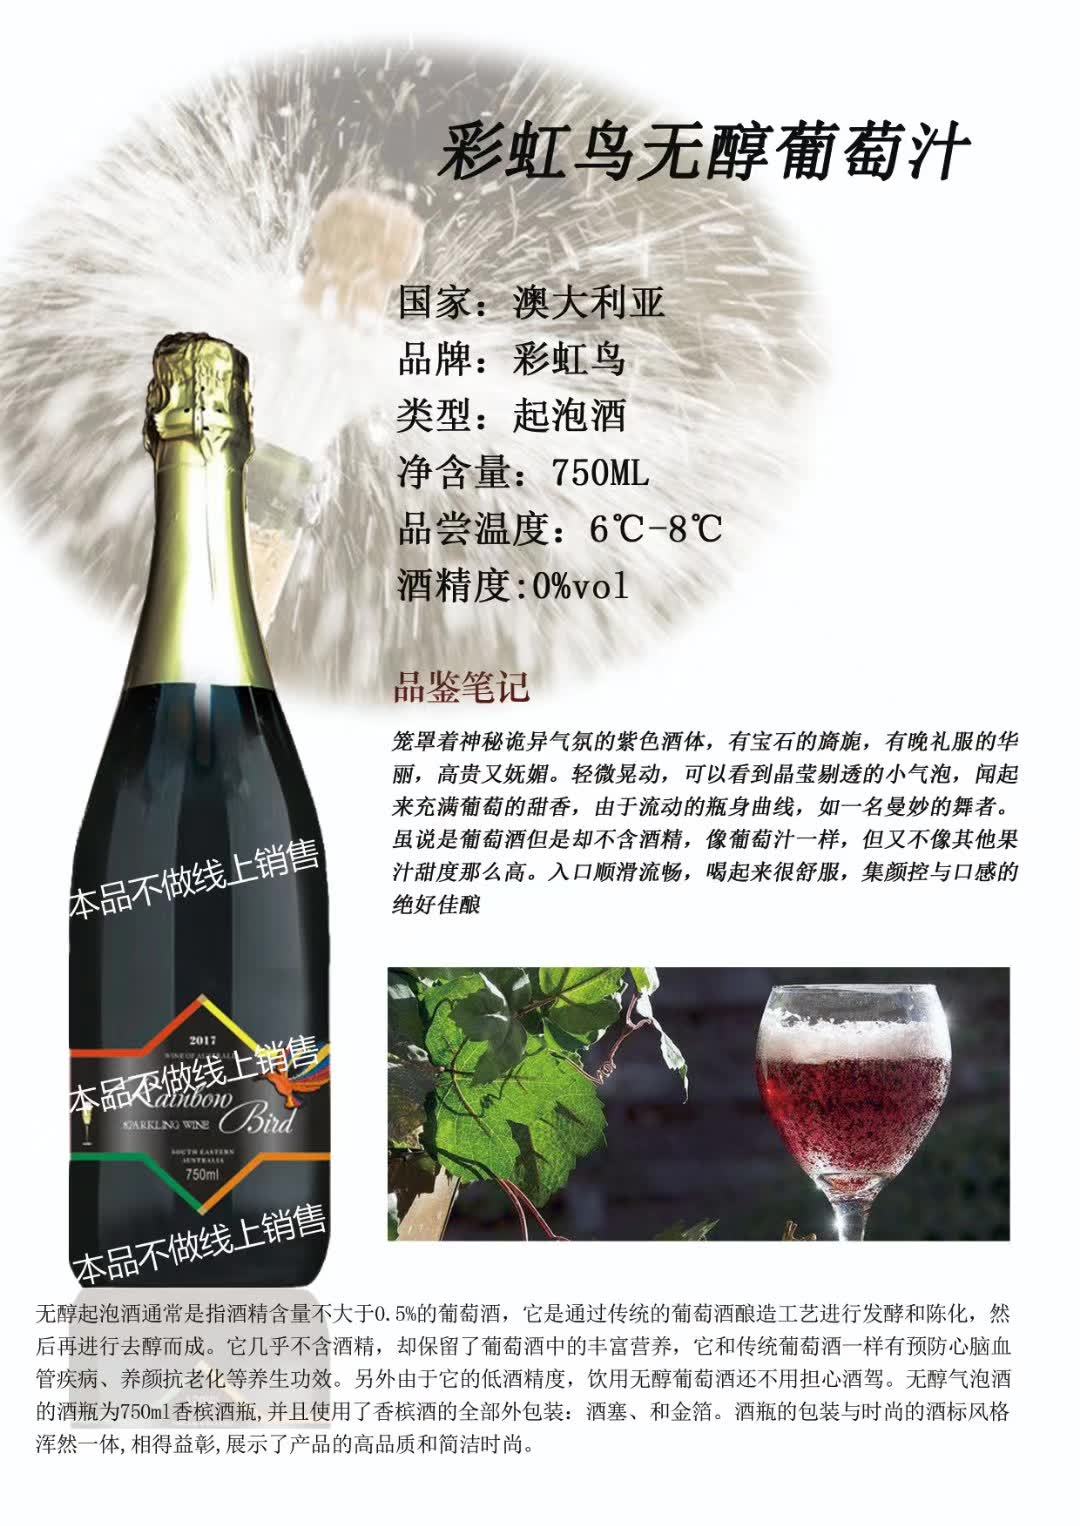 上海万耀南澳进口彩虹鸟系列无醇葡萄汁不含酒精葡萄汁代理加盟